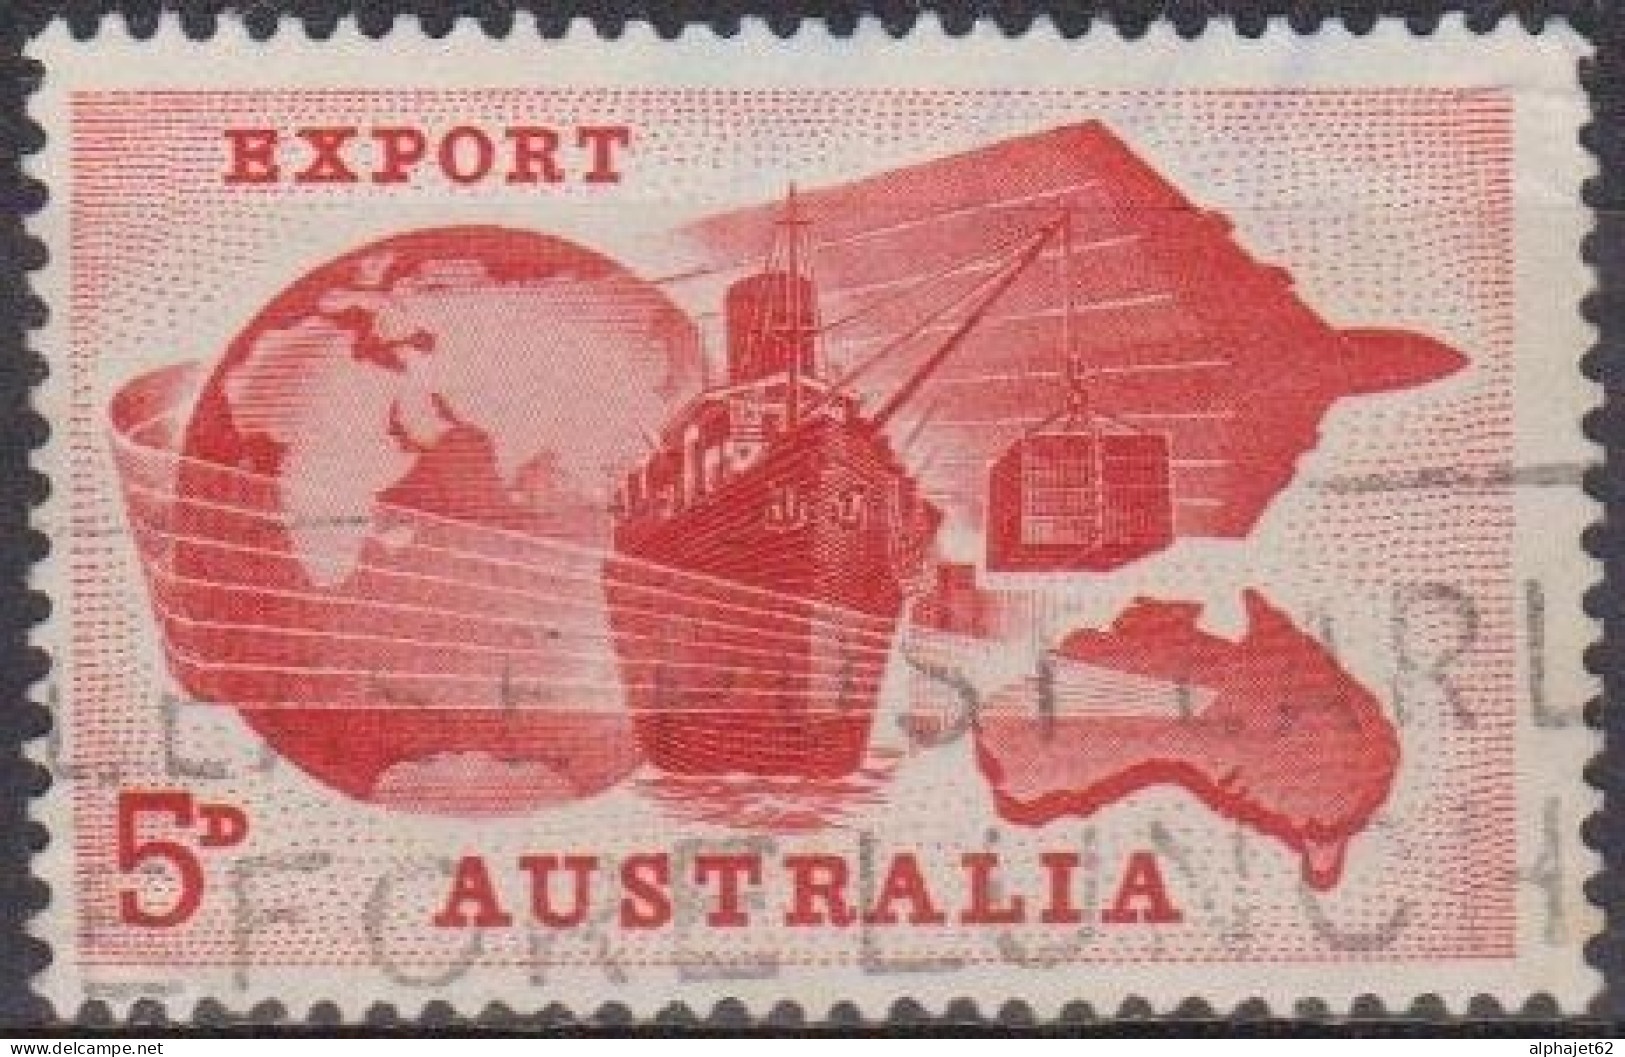 Economie - AUSTRALIE - Exportations - N° 289 - 1963 - Oblitérés